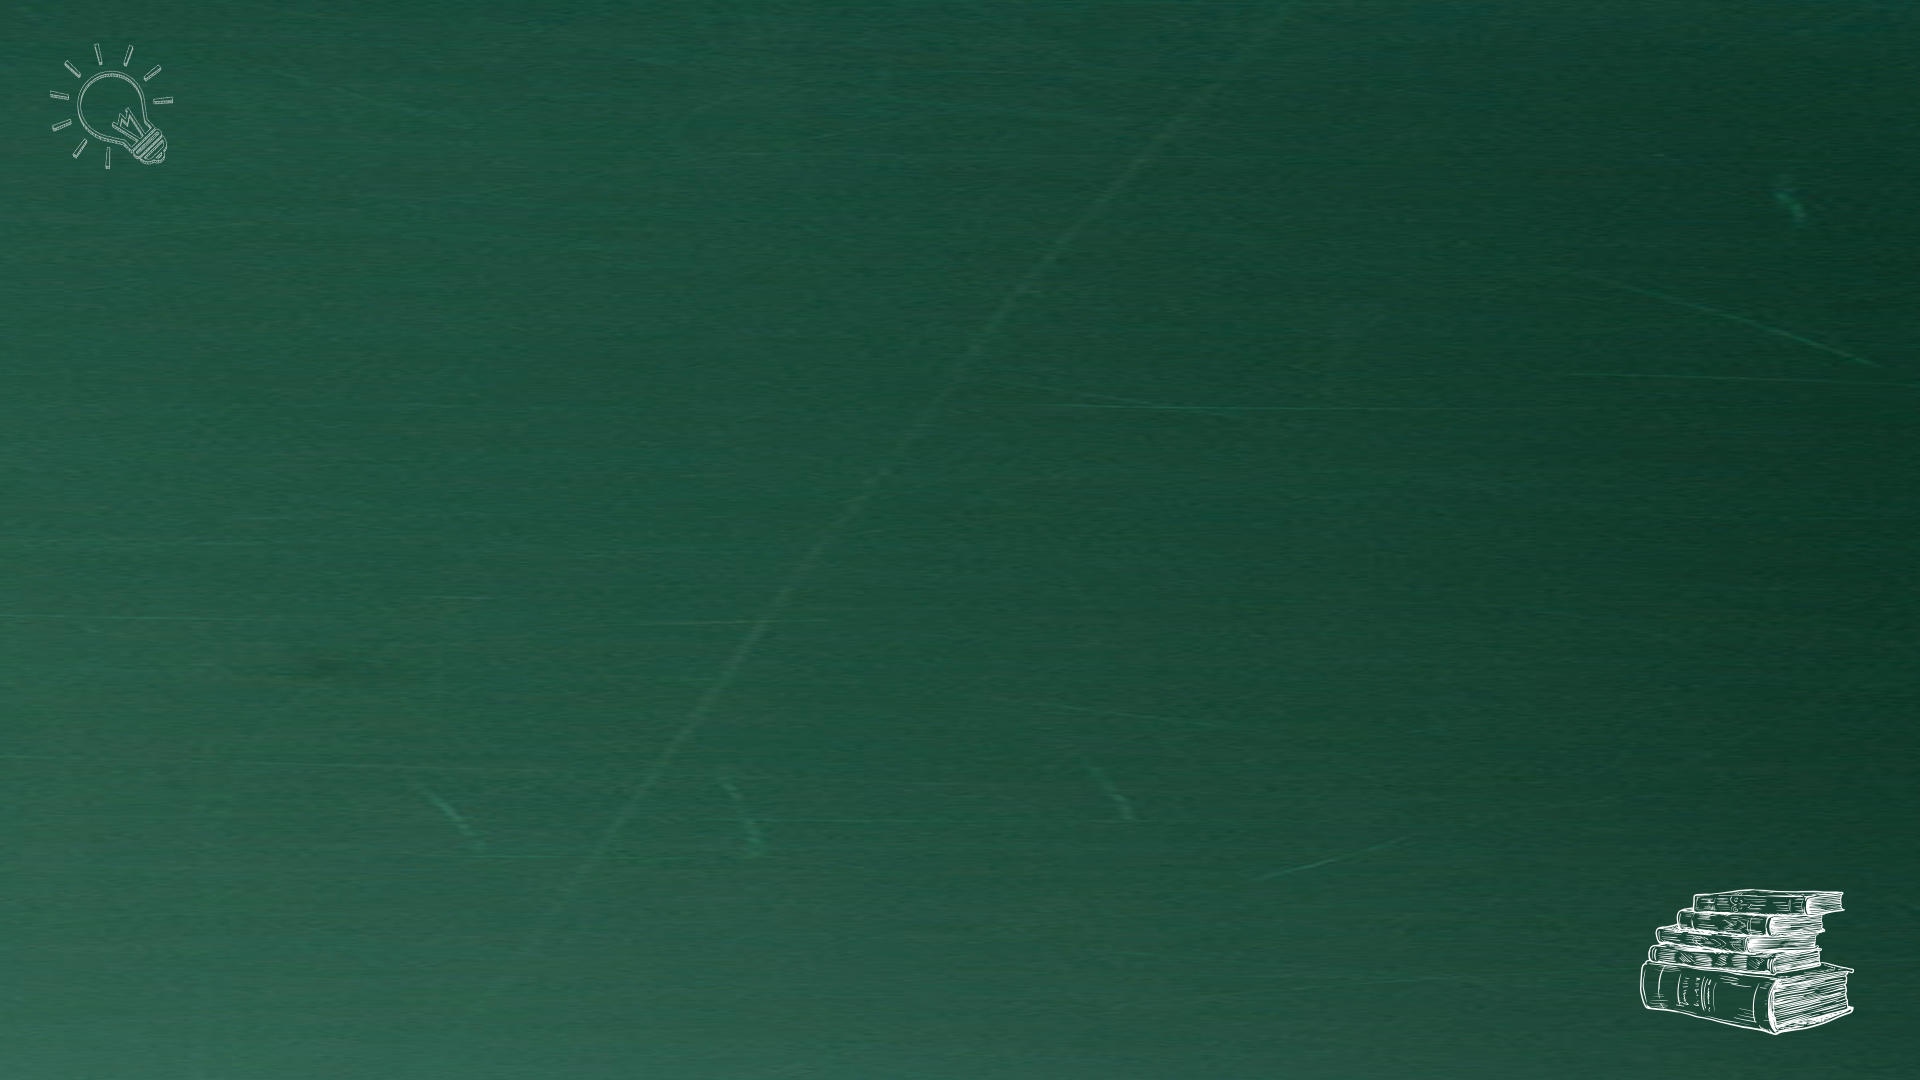 粉笔手绘元素绿色黑板背景